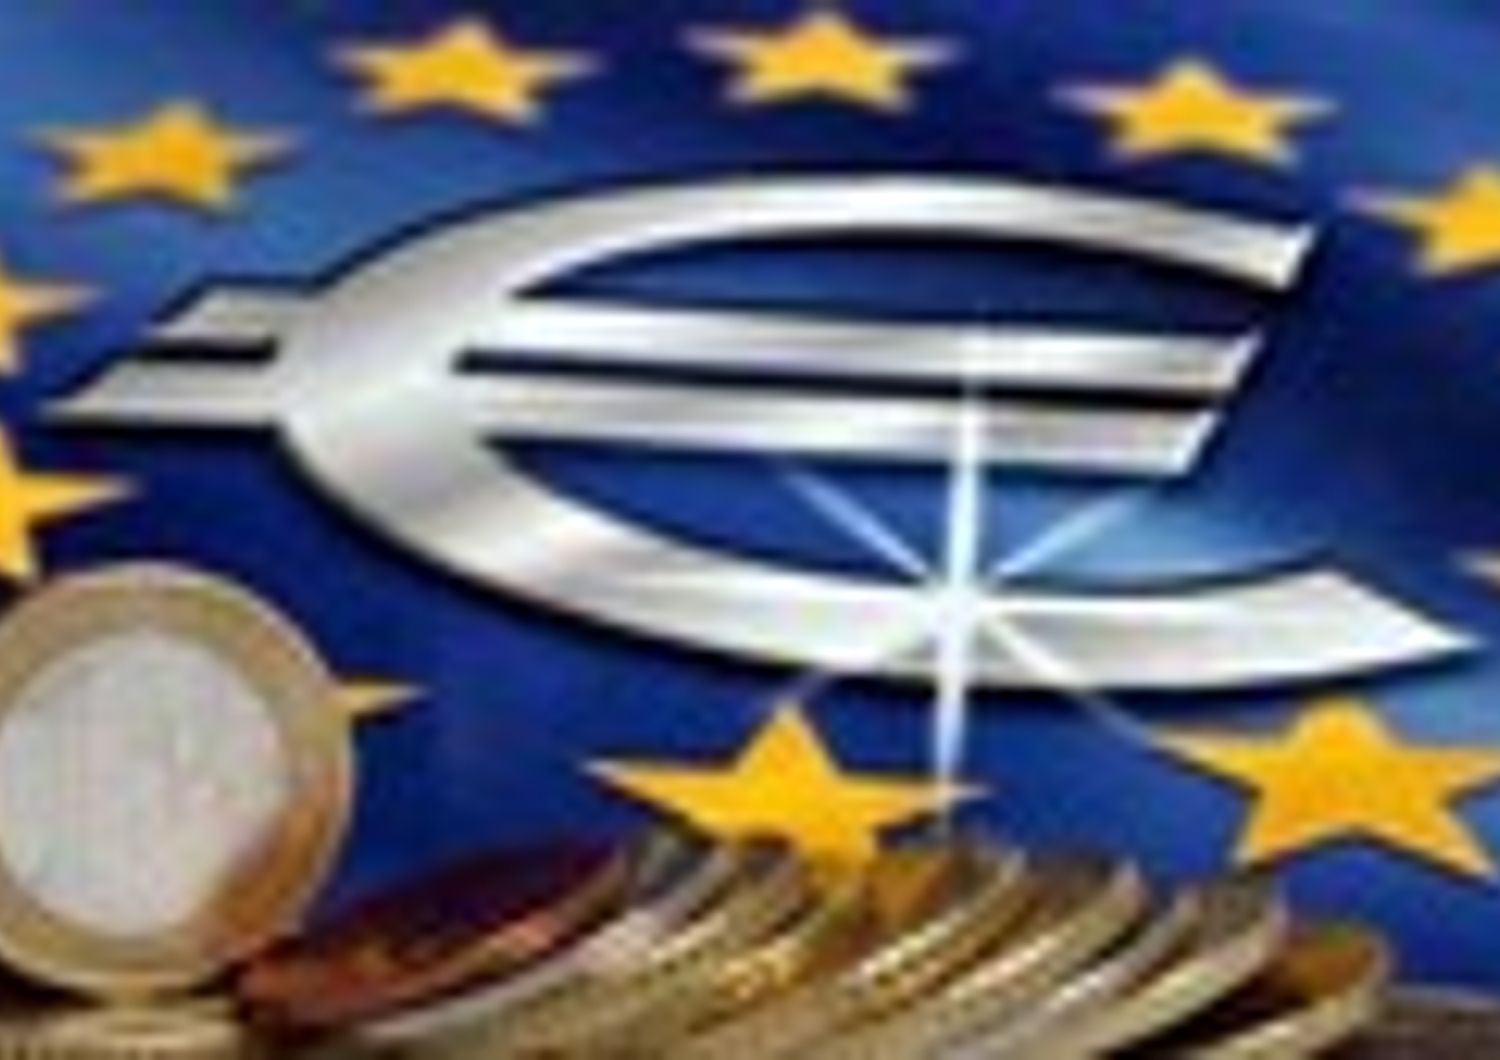 CRISI: I PICCOLI STATI EUROPEIE LO 'SCOGLIO' DELL'EURO